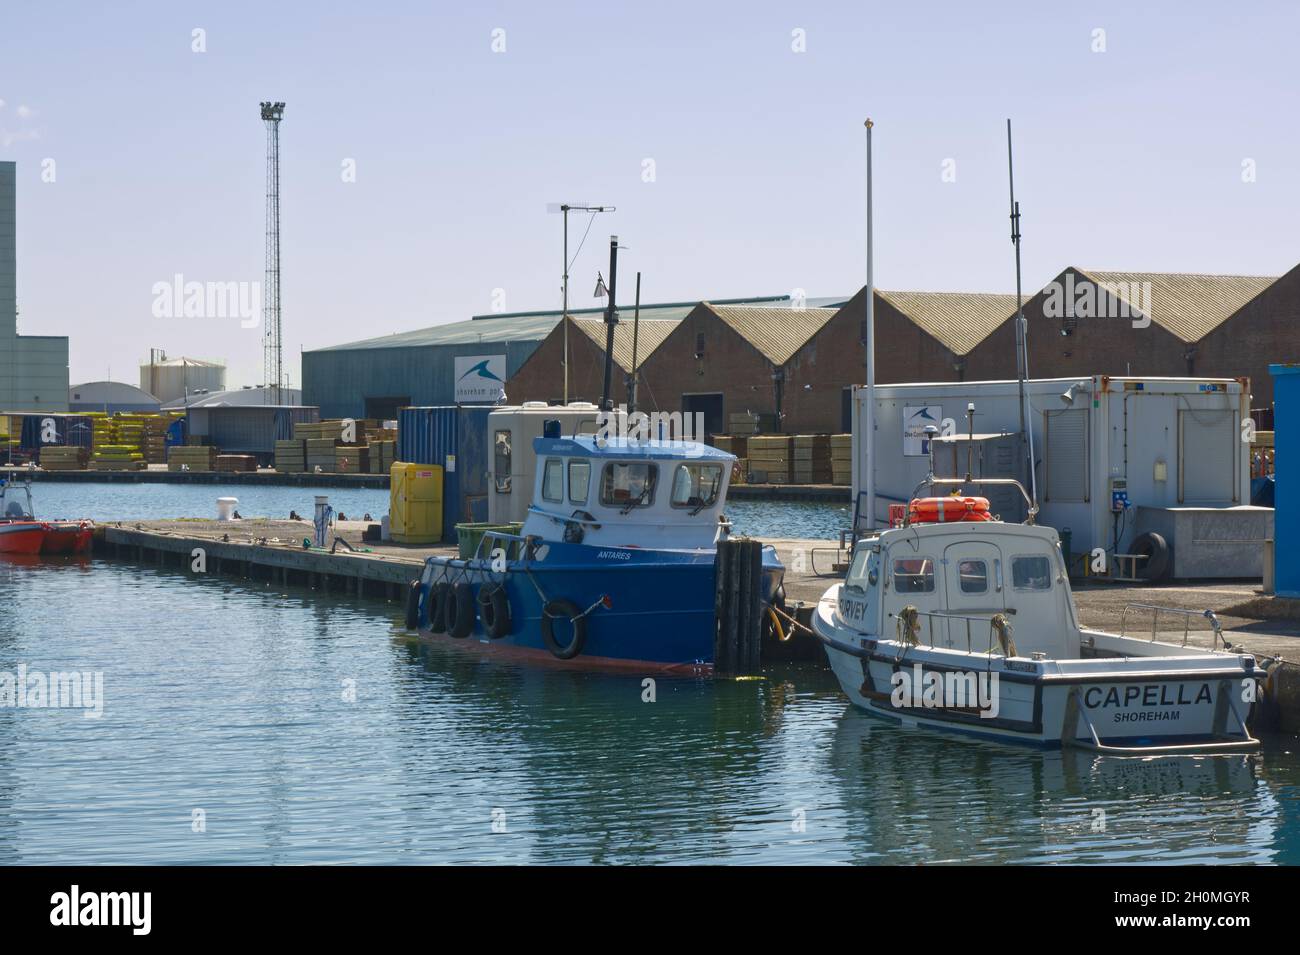 Port et port de Shoreham dans West Sussex, Angleterre.Avec des bateaux amarrés et des bâtiments d'entrepôt. Banque D'Images